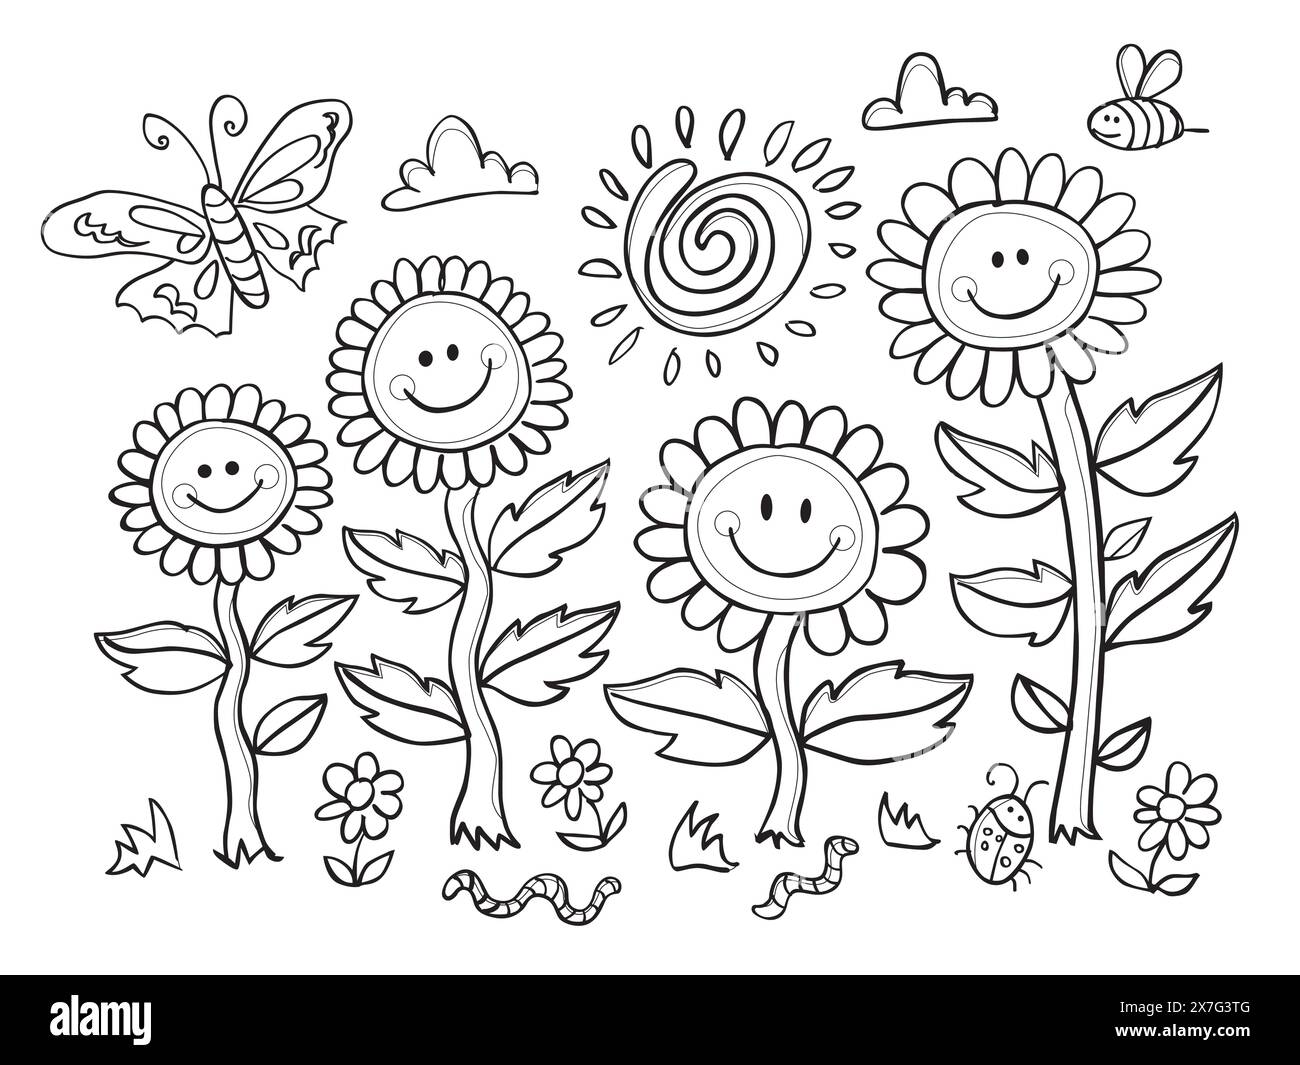 Vektor schwarz und weiß Färbung Blatt mit Smiley Gesicht Blume Illustration mit Sonne Swirl und Motte. Geeignete Maltätigkeit für Kinder. Stock Vektor